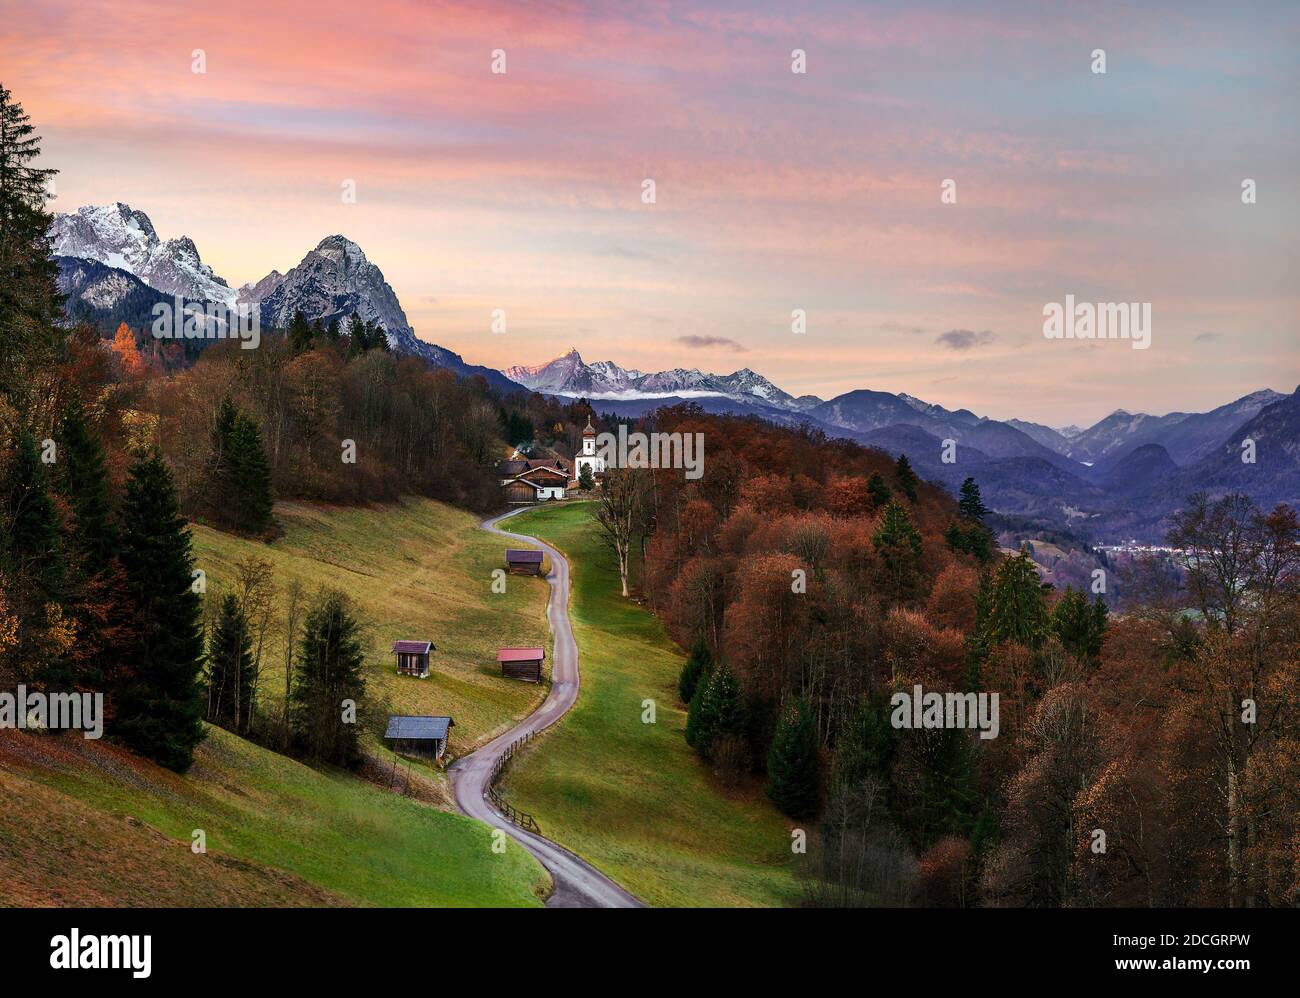 Iglesia de la montaña Wamberg cerca de Garmisch-Partenkirchen en el amanecer otoñal Foto de stock